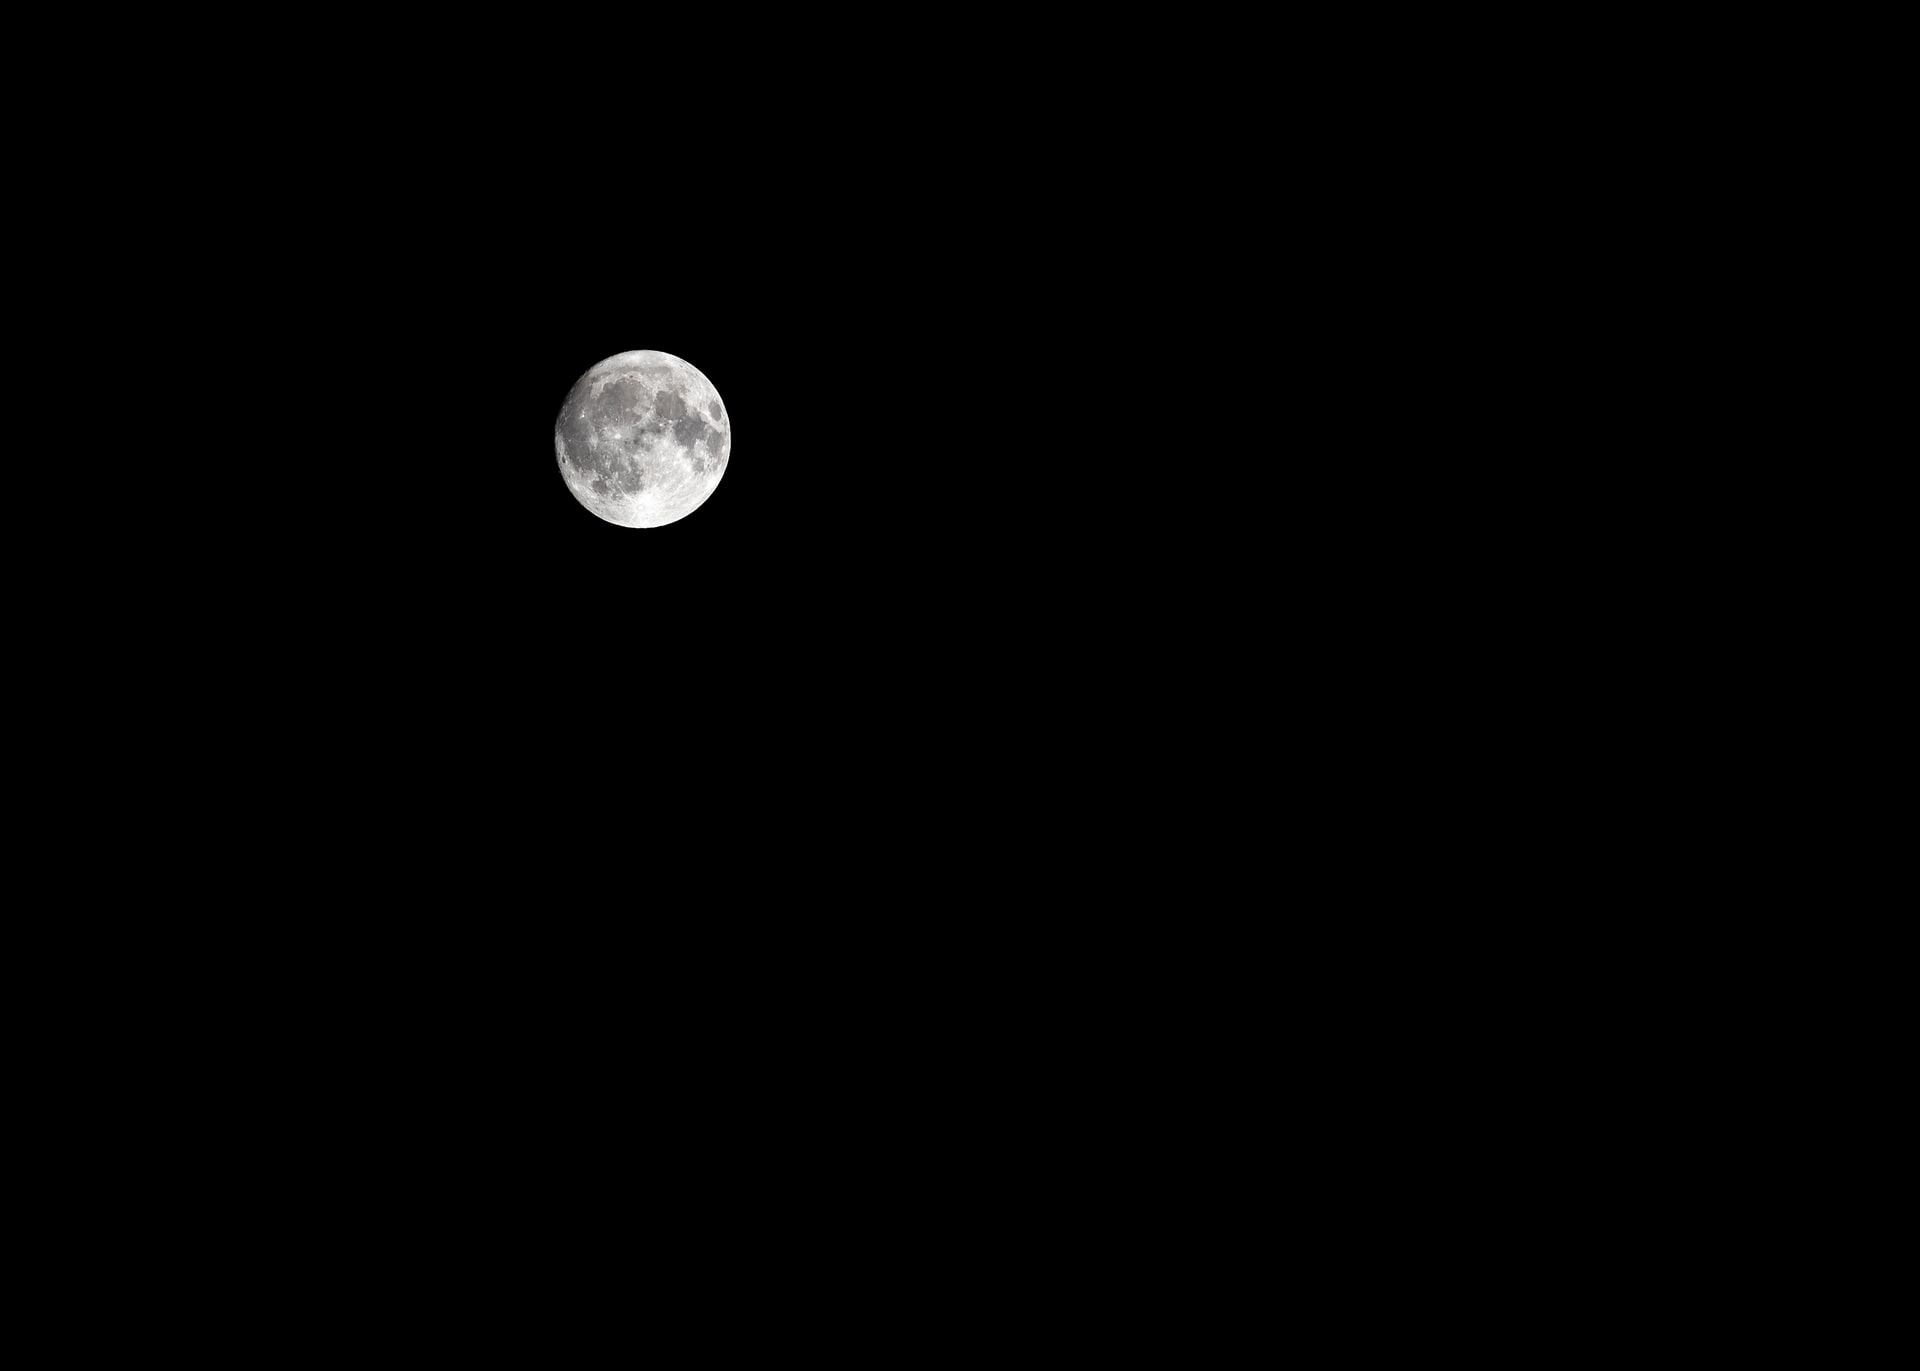 Mặt Trăng Và Bầu Trời đầy Sao Trong Rừng đêm Hình ảnh  Định dạng hình ảnh  JPG 630012543 vnlovepikcom